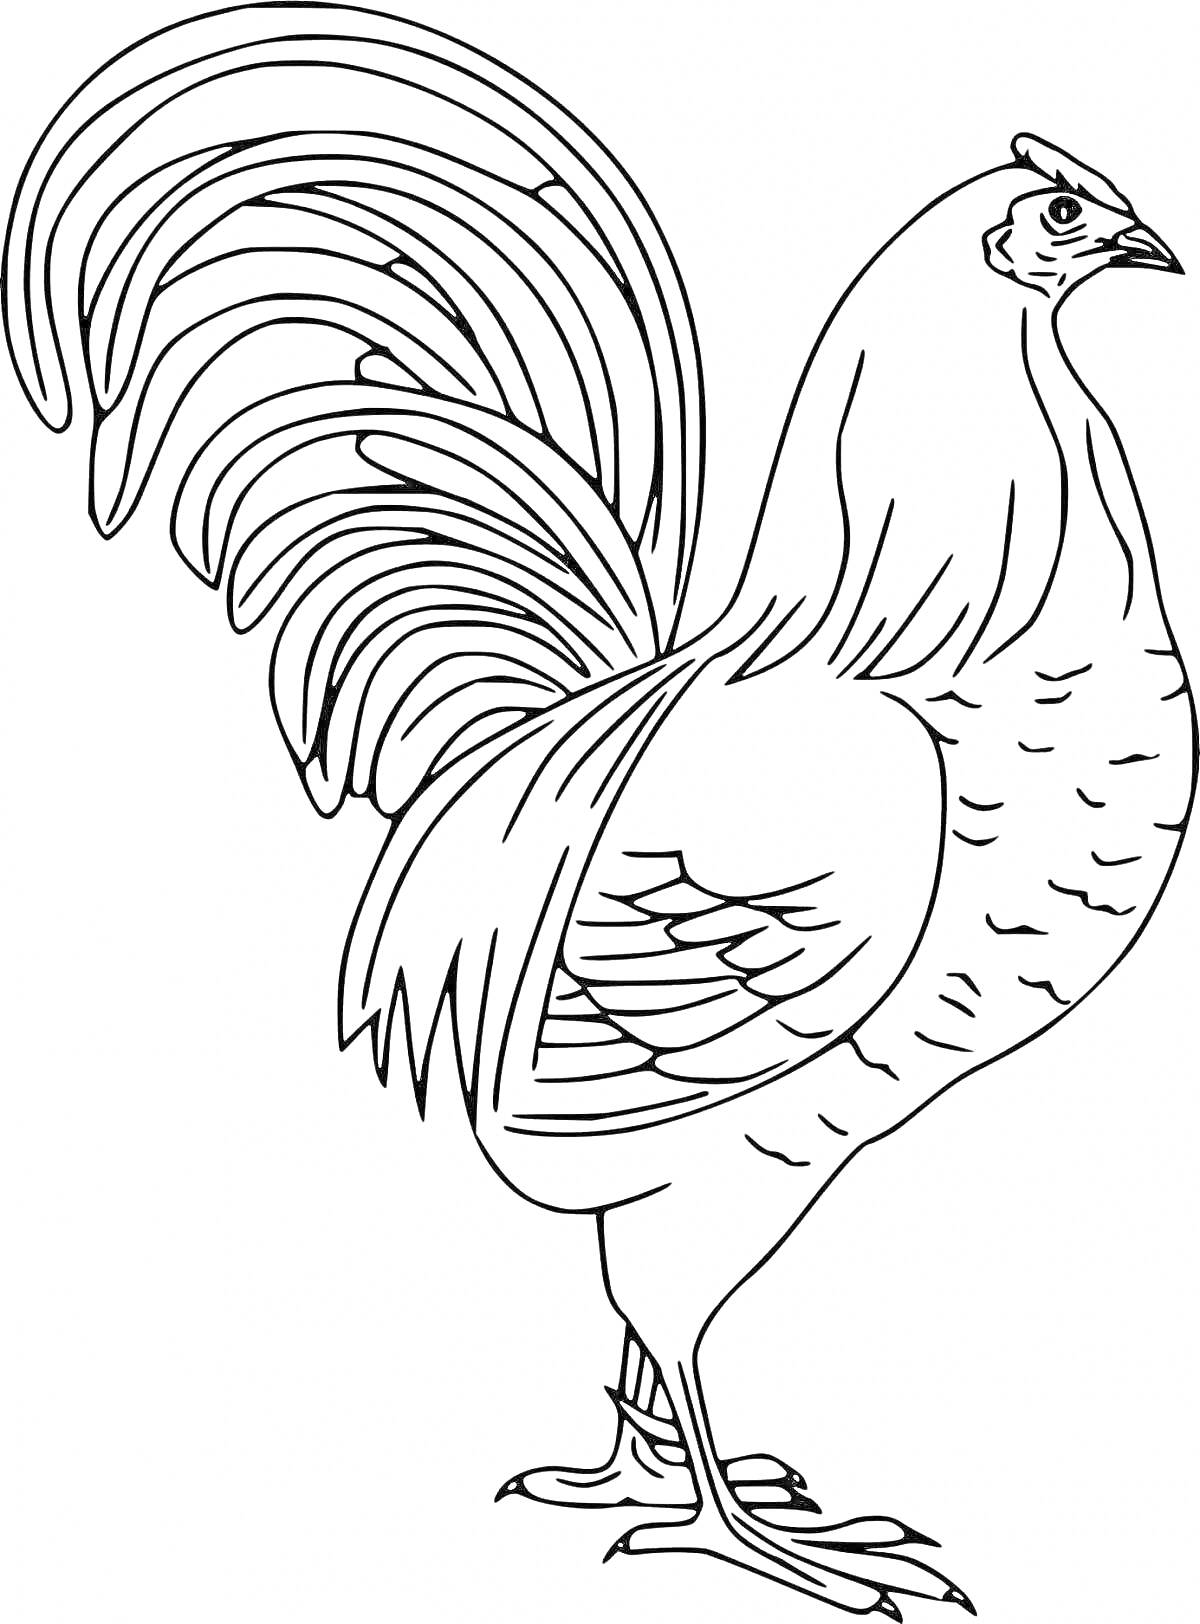 Раскраска Петушок с длинным хвостом и перьями